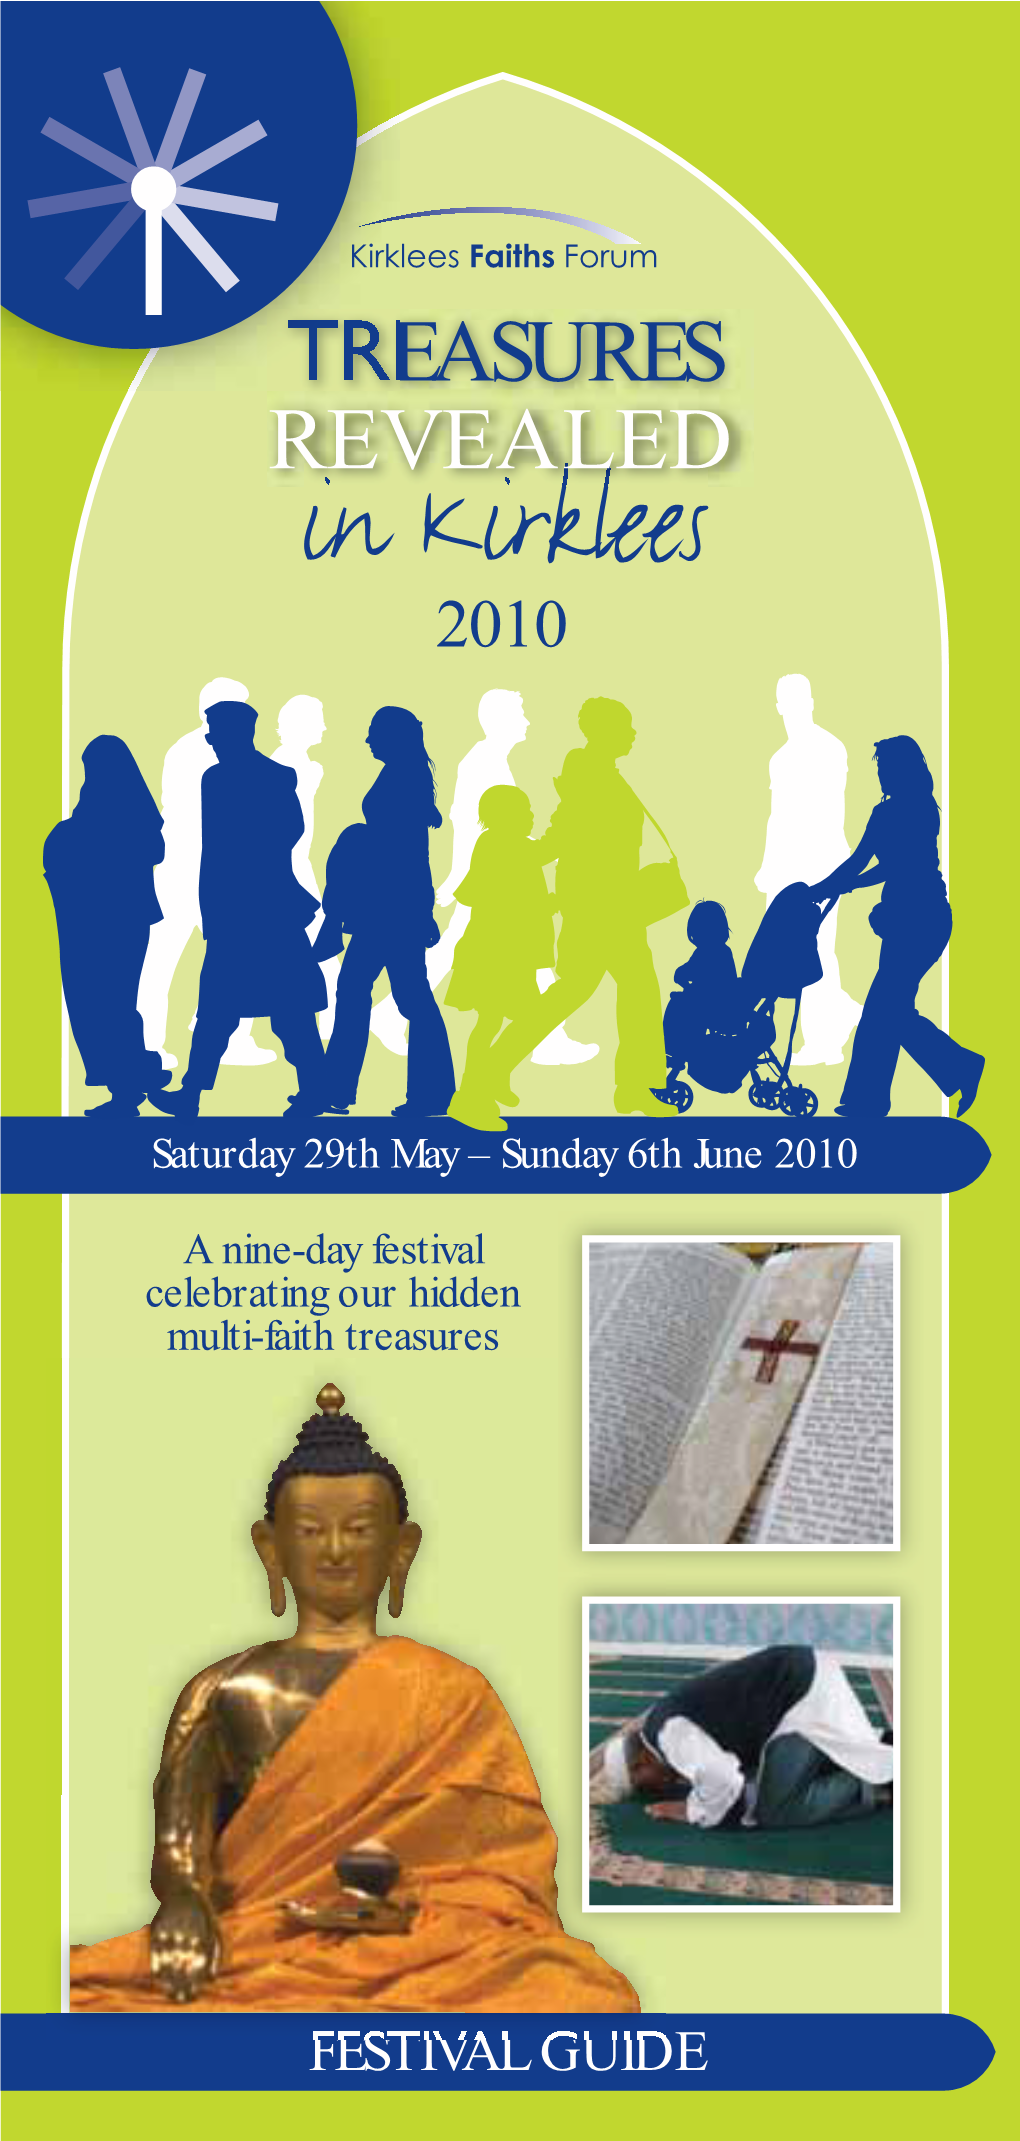 TREASURES REVEALED in Kirklees 2010